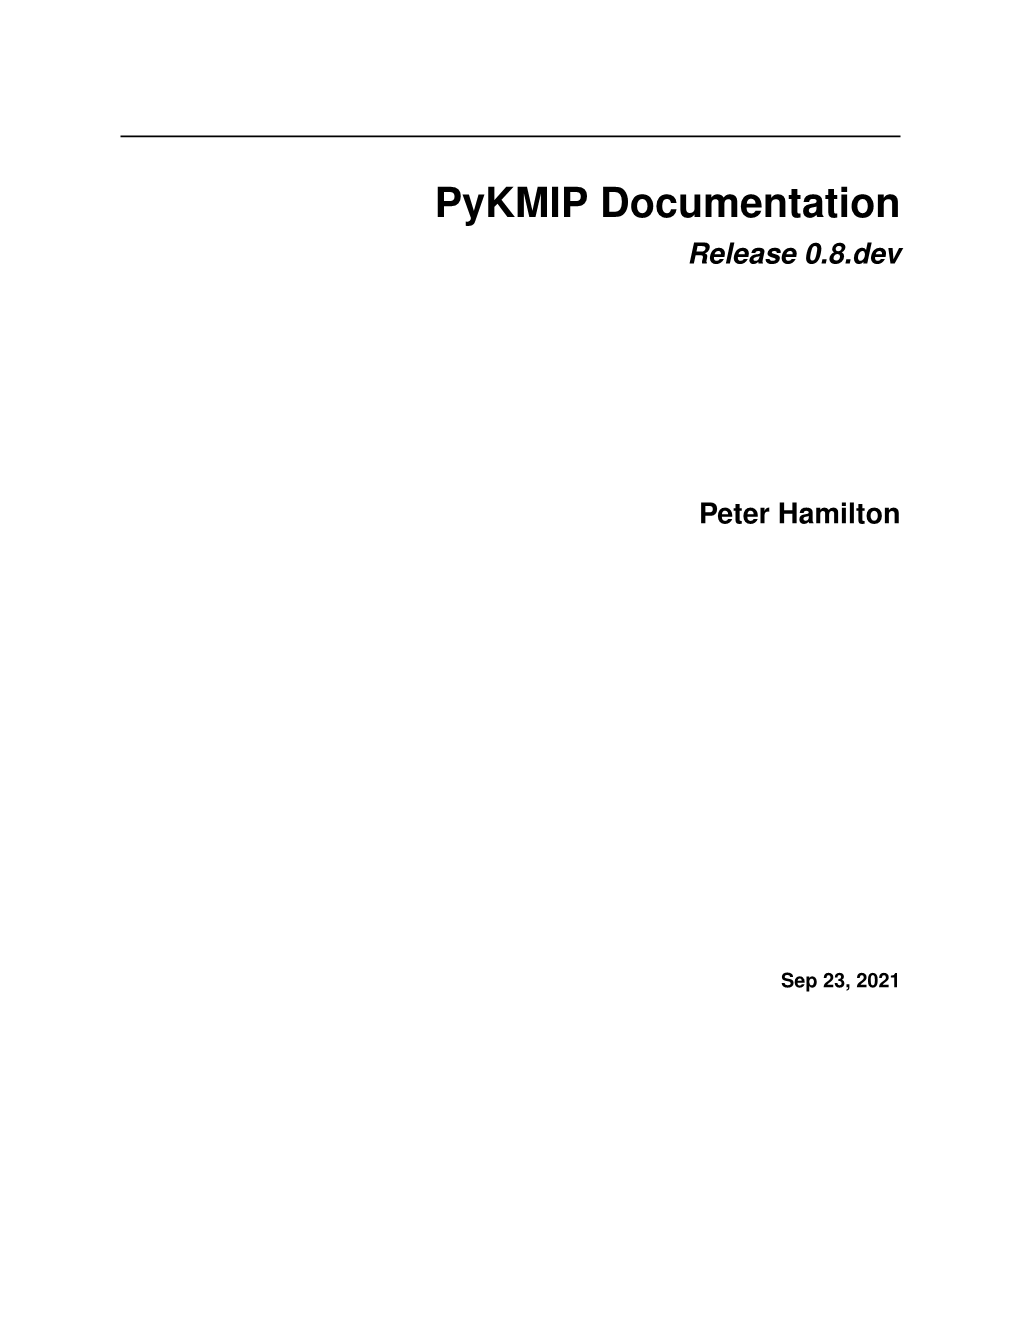 Pykmip Documentation Release 0.8.Dev